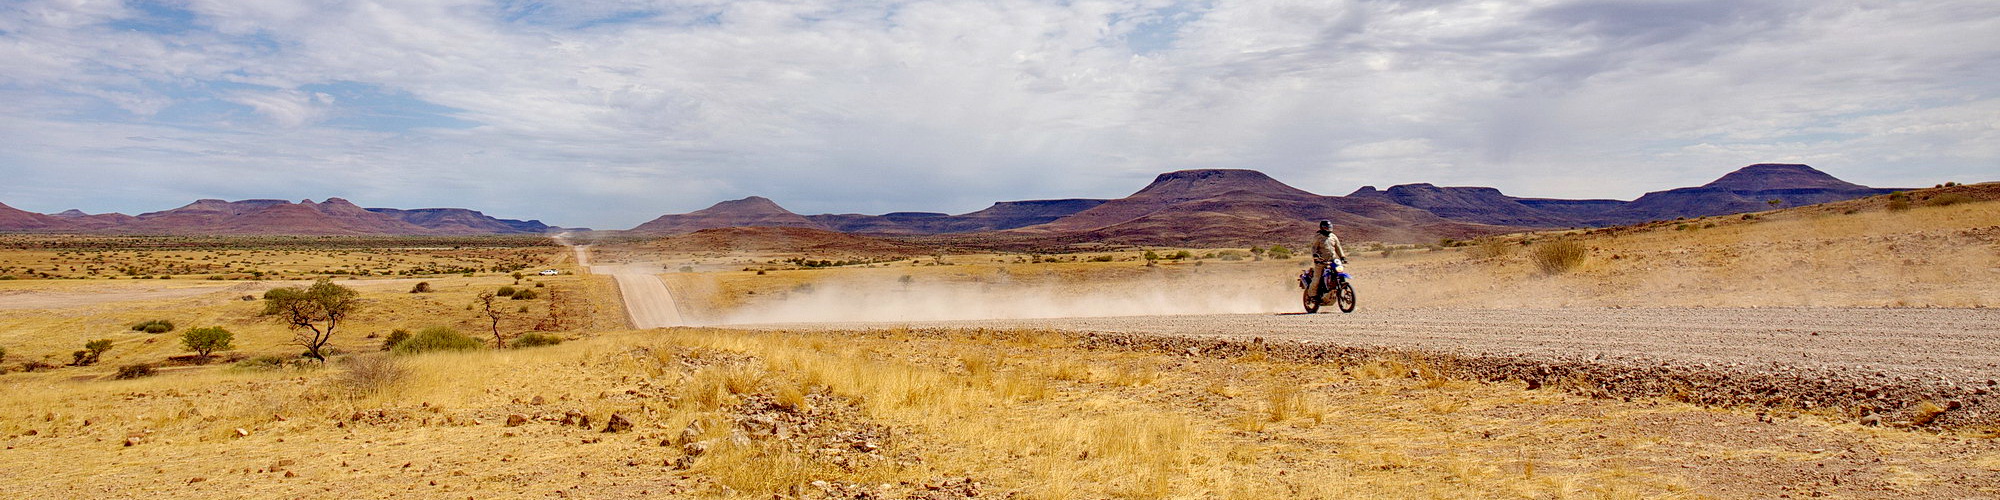 namibia-motorrad-013.jpg